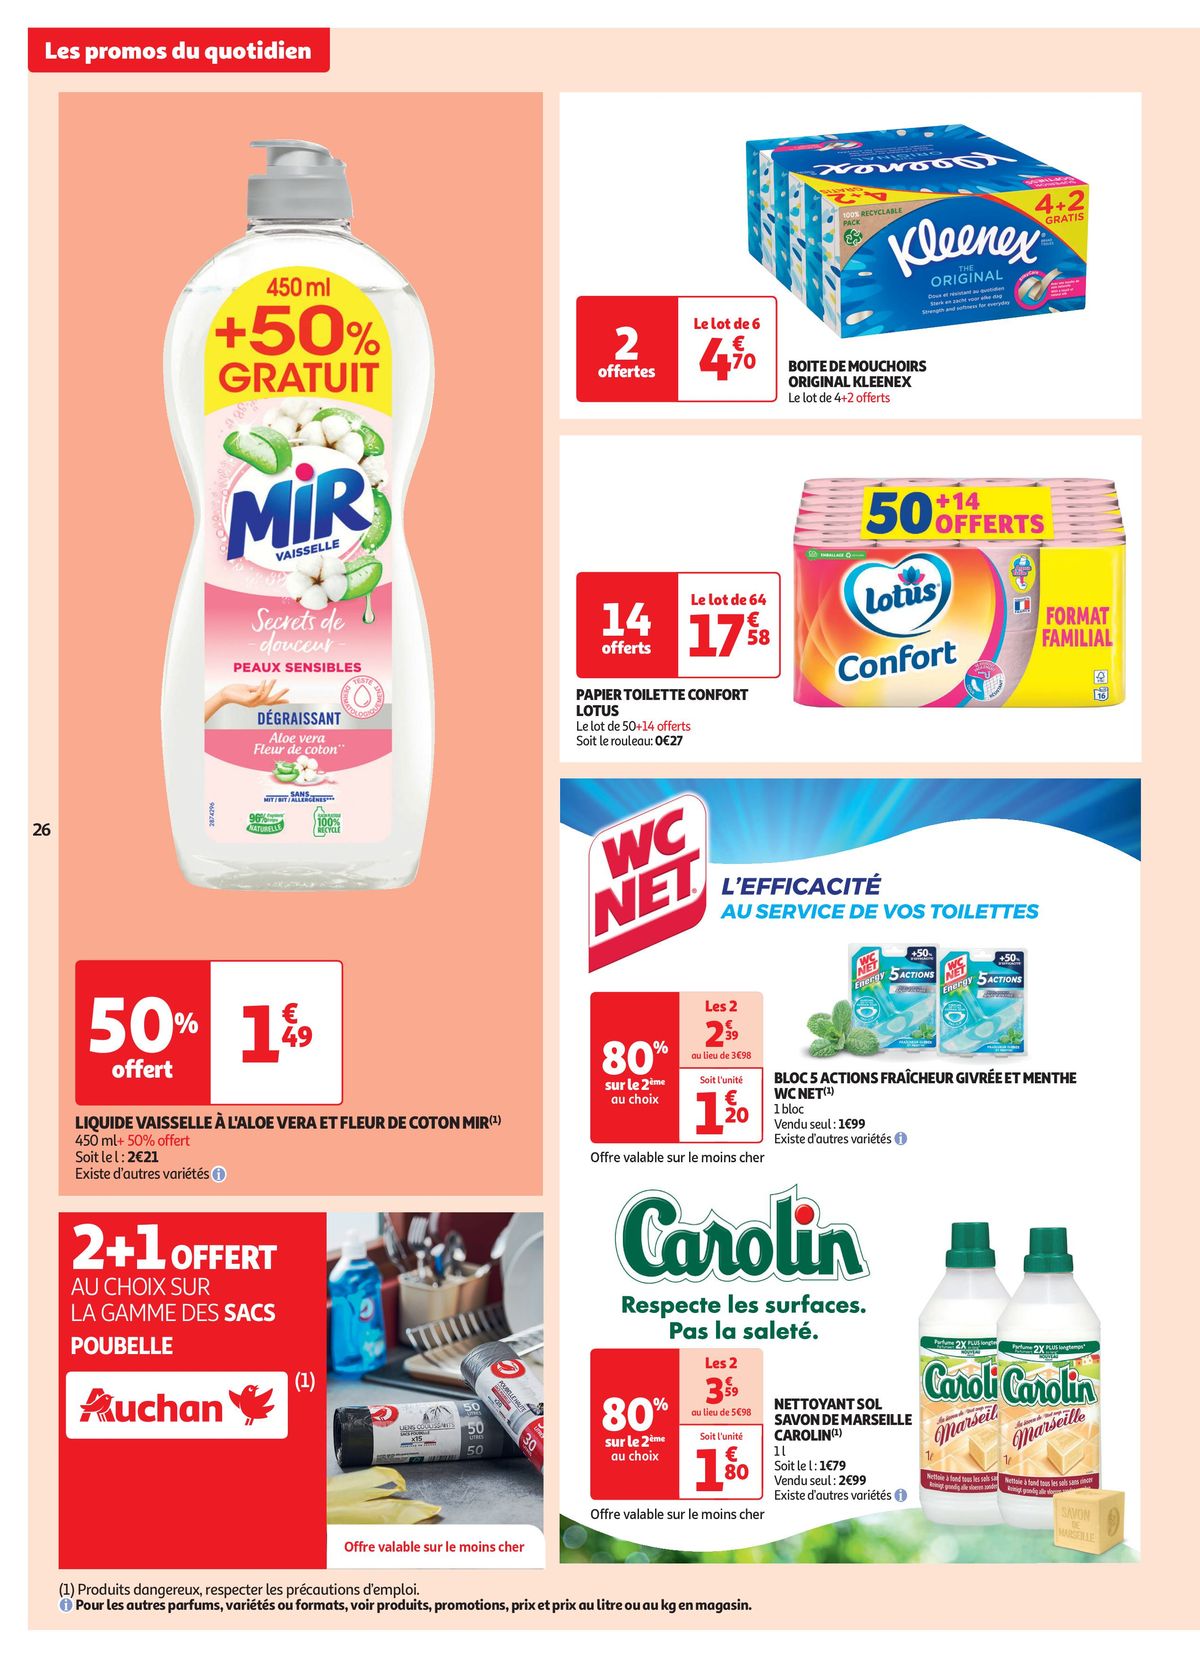 Catalogue Les 25 jours Auchan, c'est parti !, page 00026